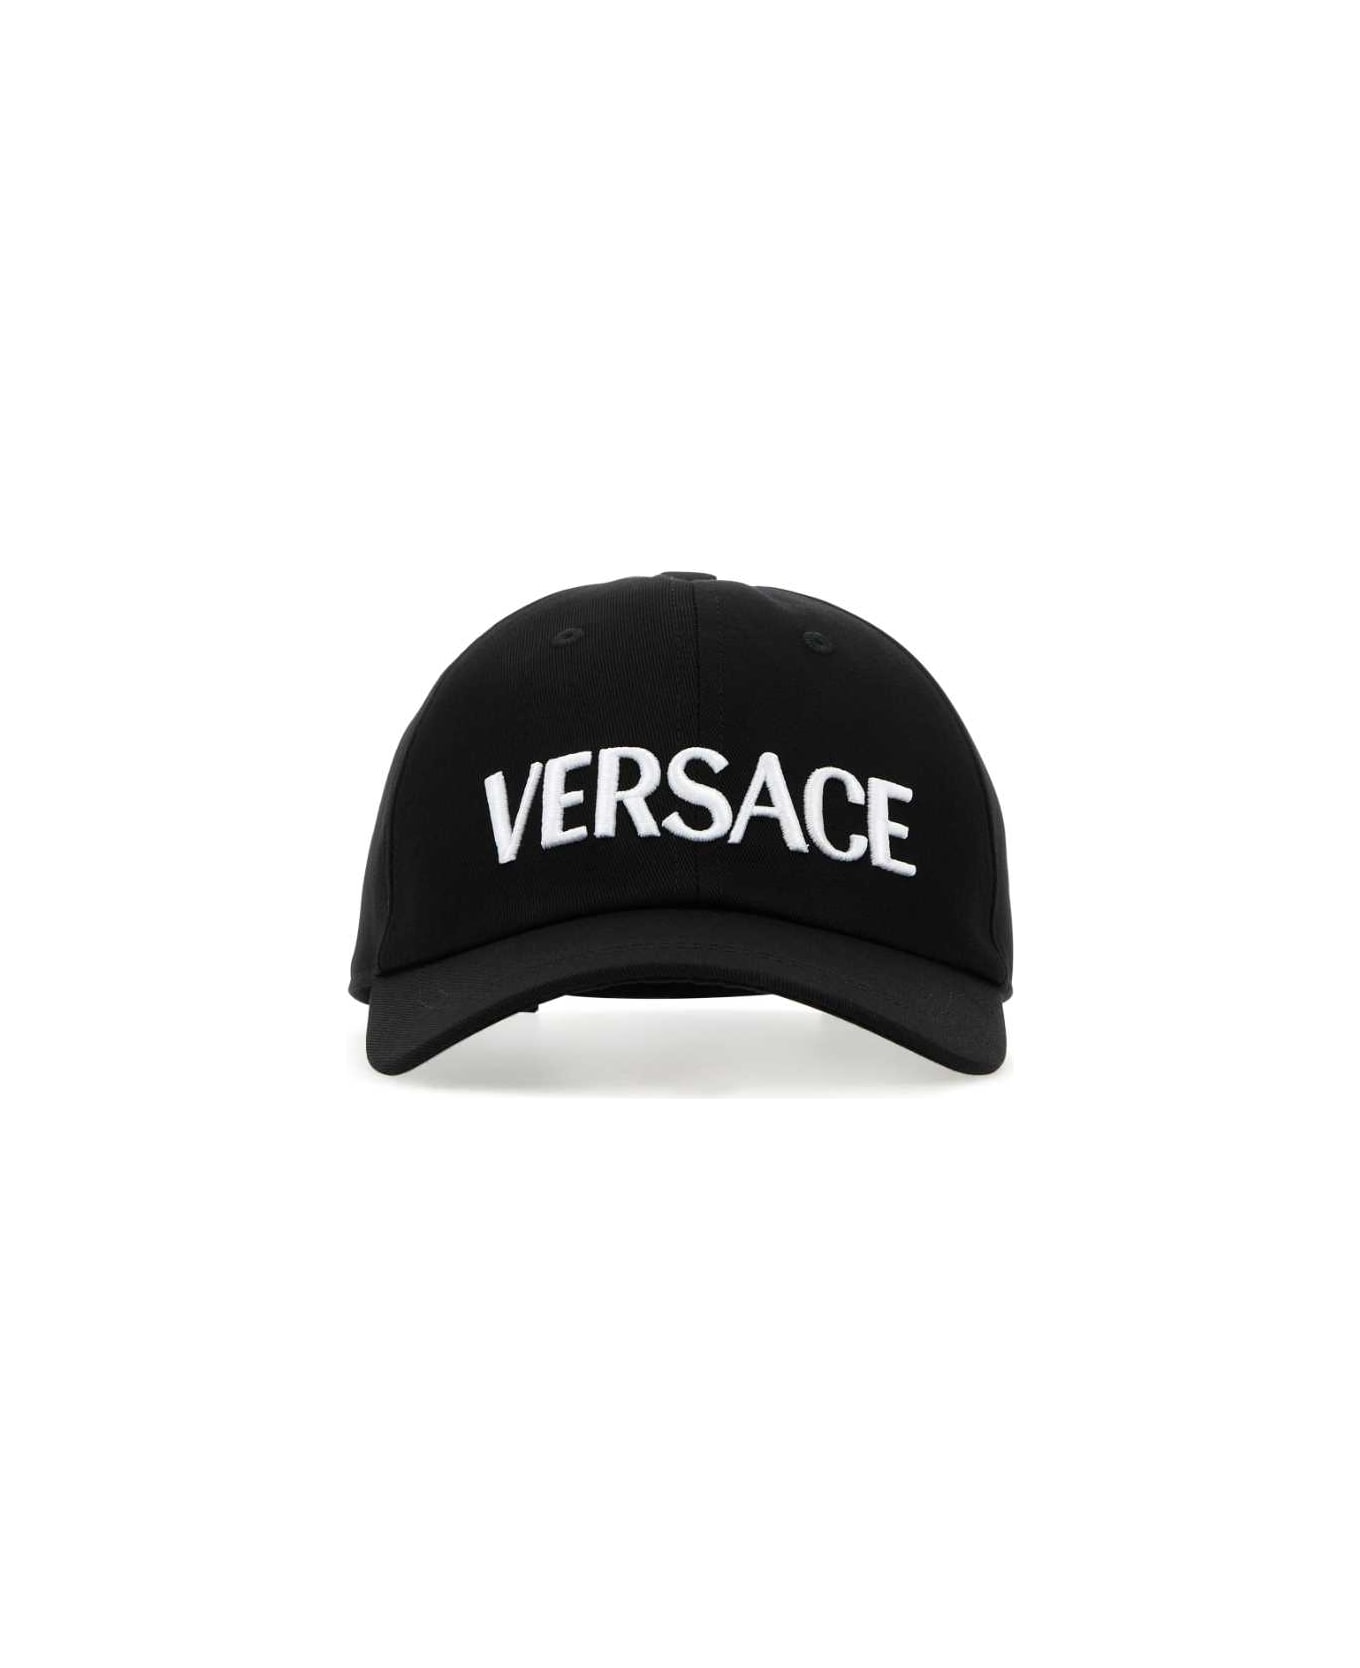 Versace Black Cotton Baseball Cap - BLACKWHITEGOLD